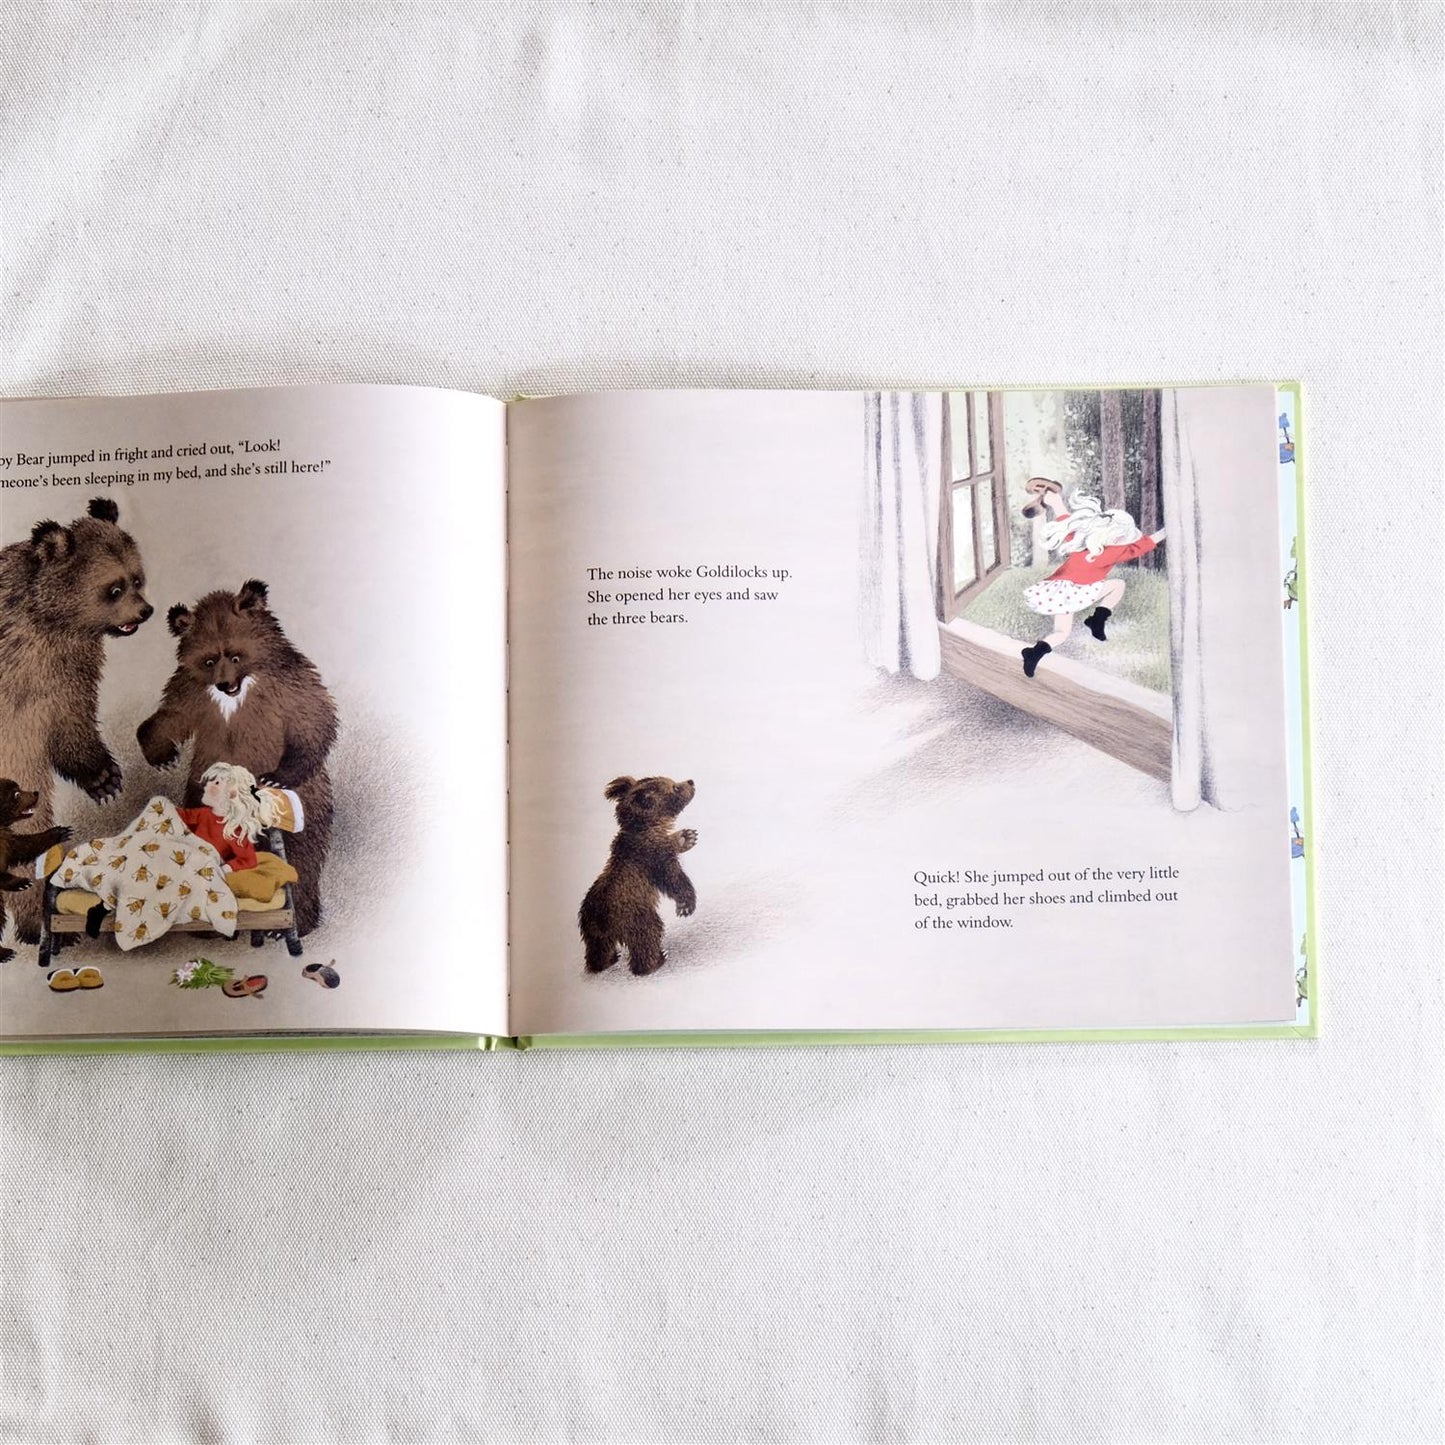 Goldilocks and the Three Bears - Gerda Muller